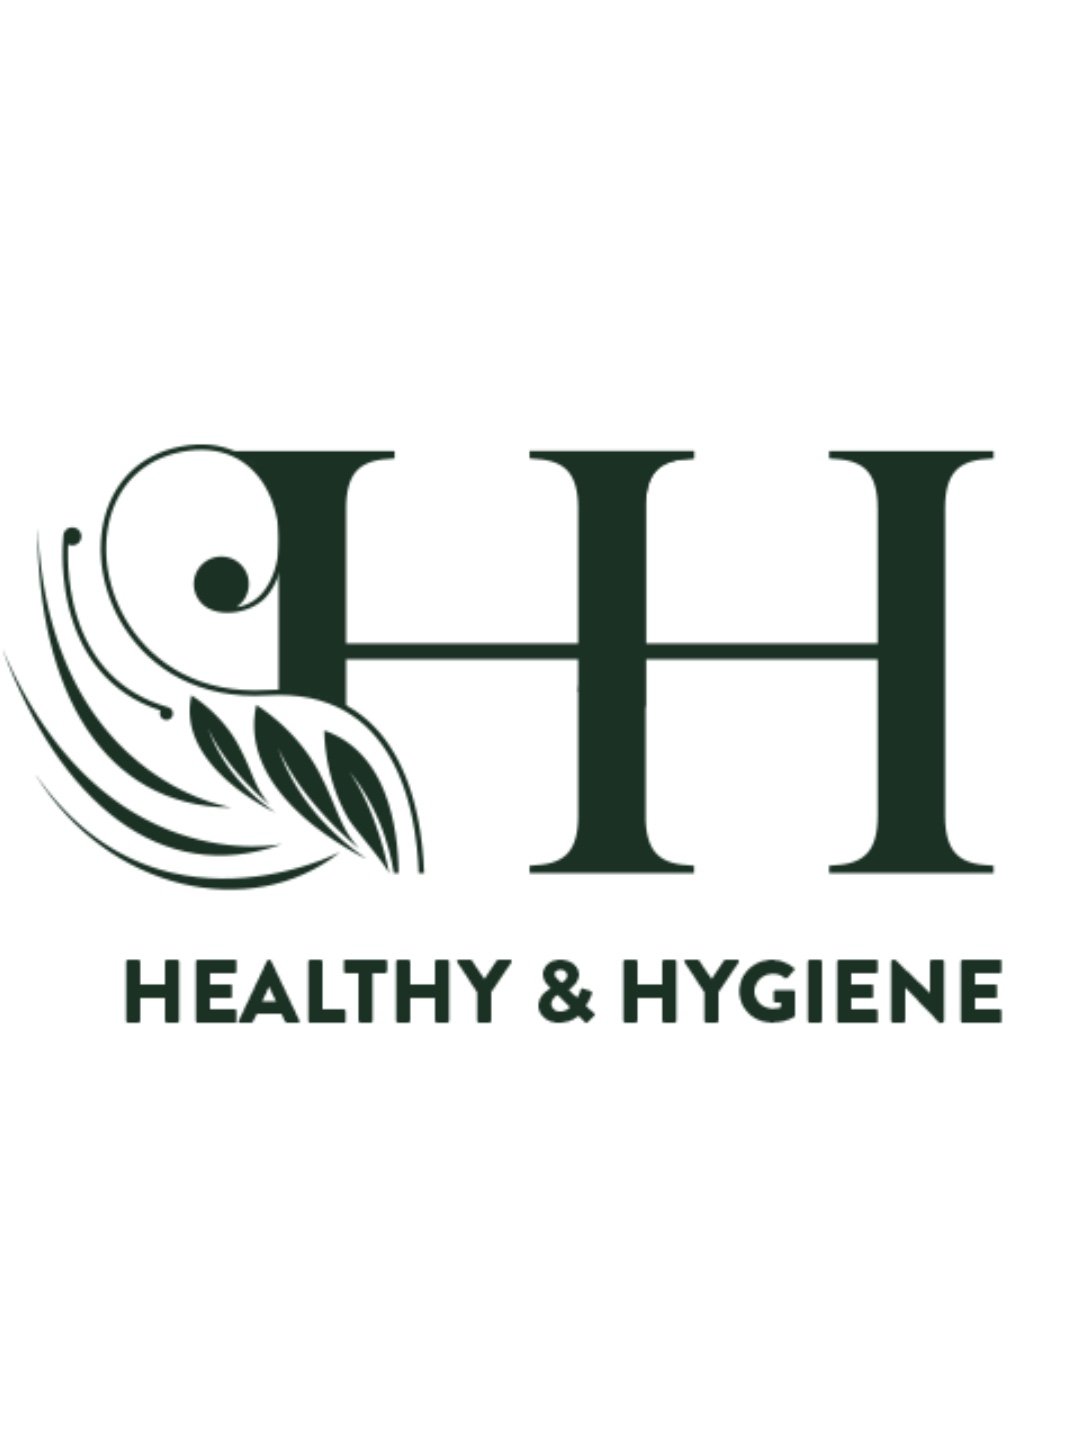 Healthy & hygiene